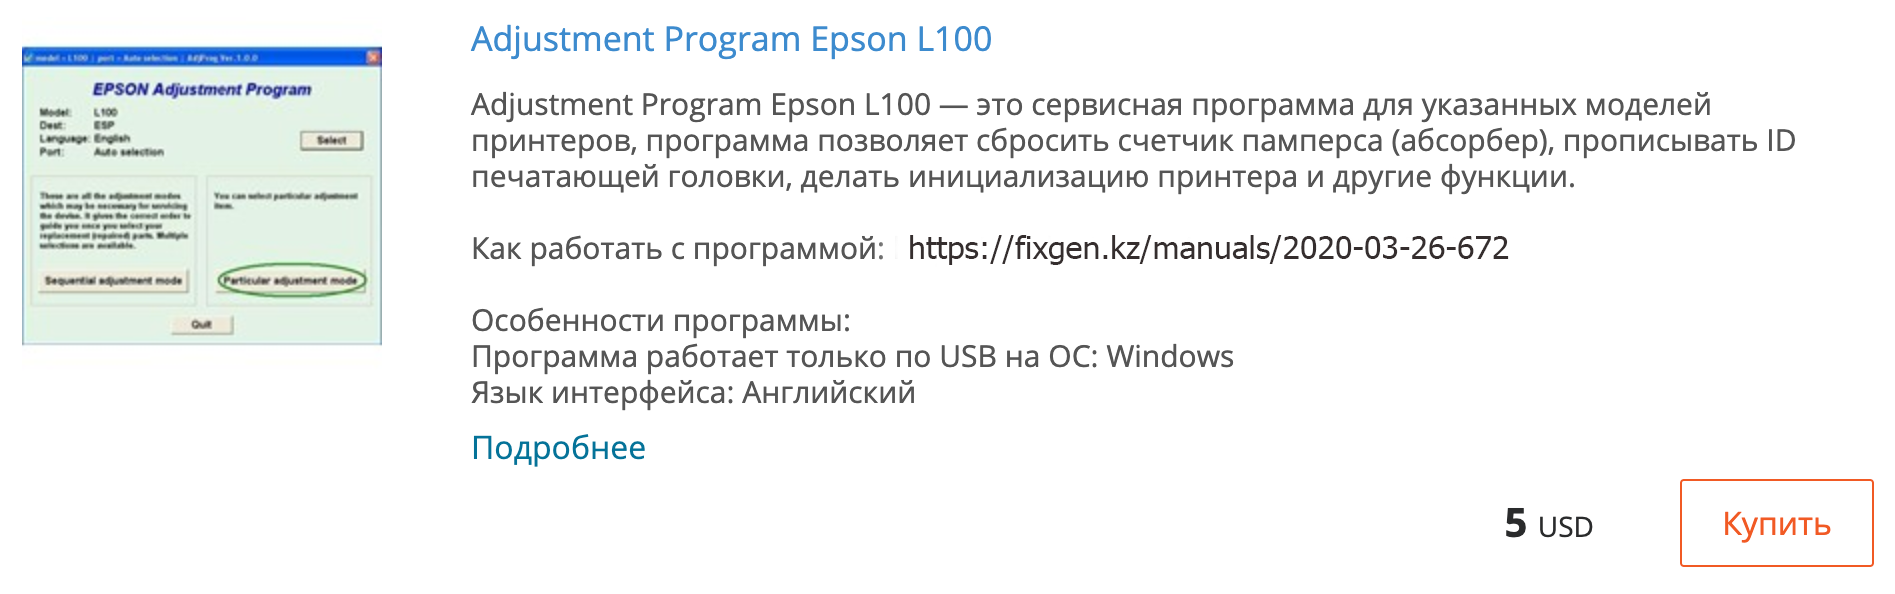 Купить Adjustment program Epson L100